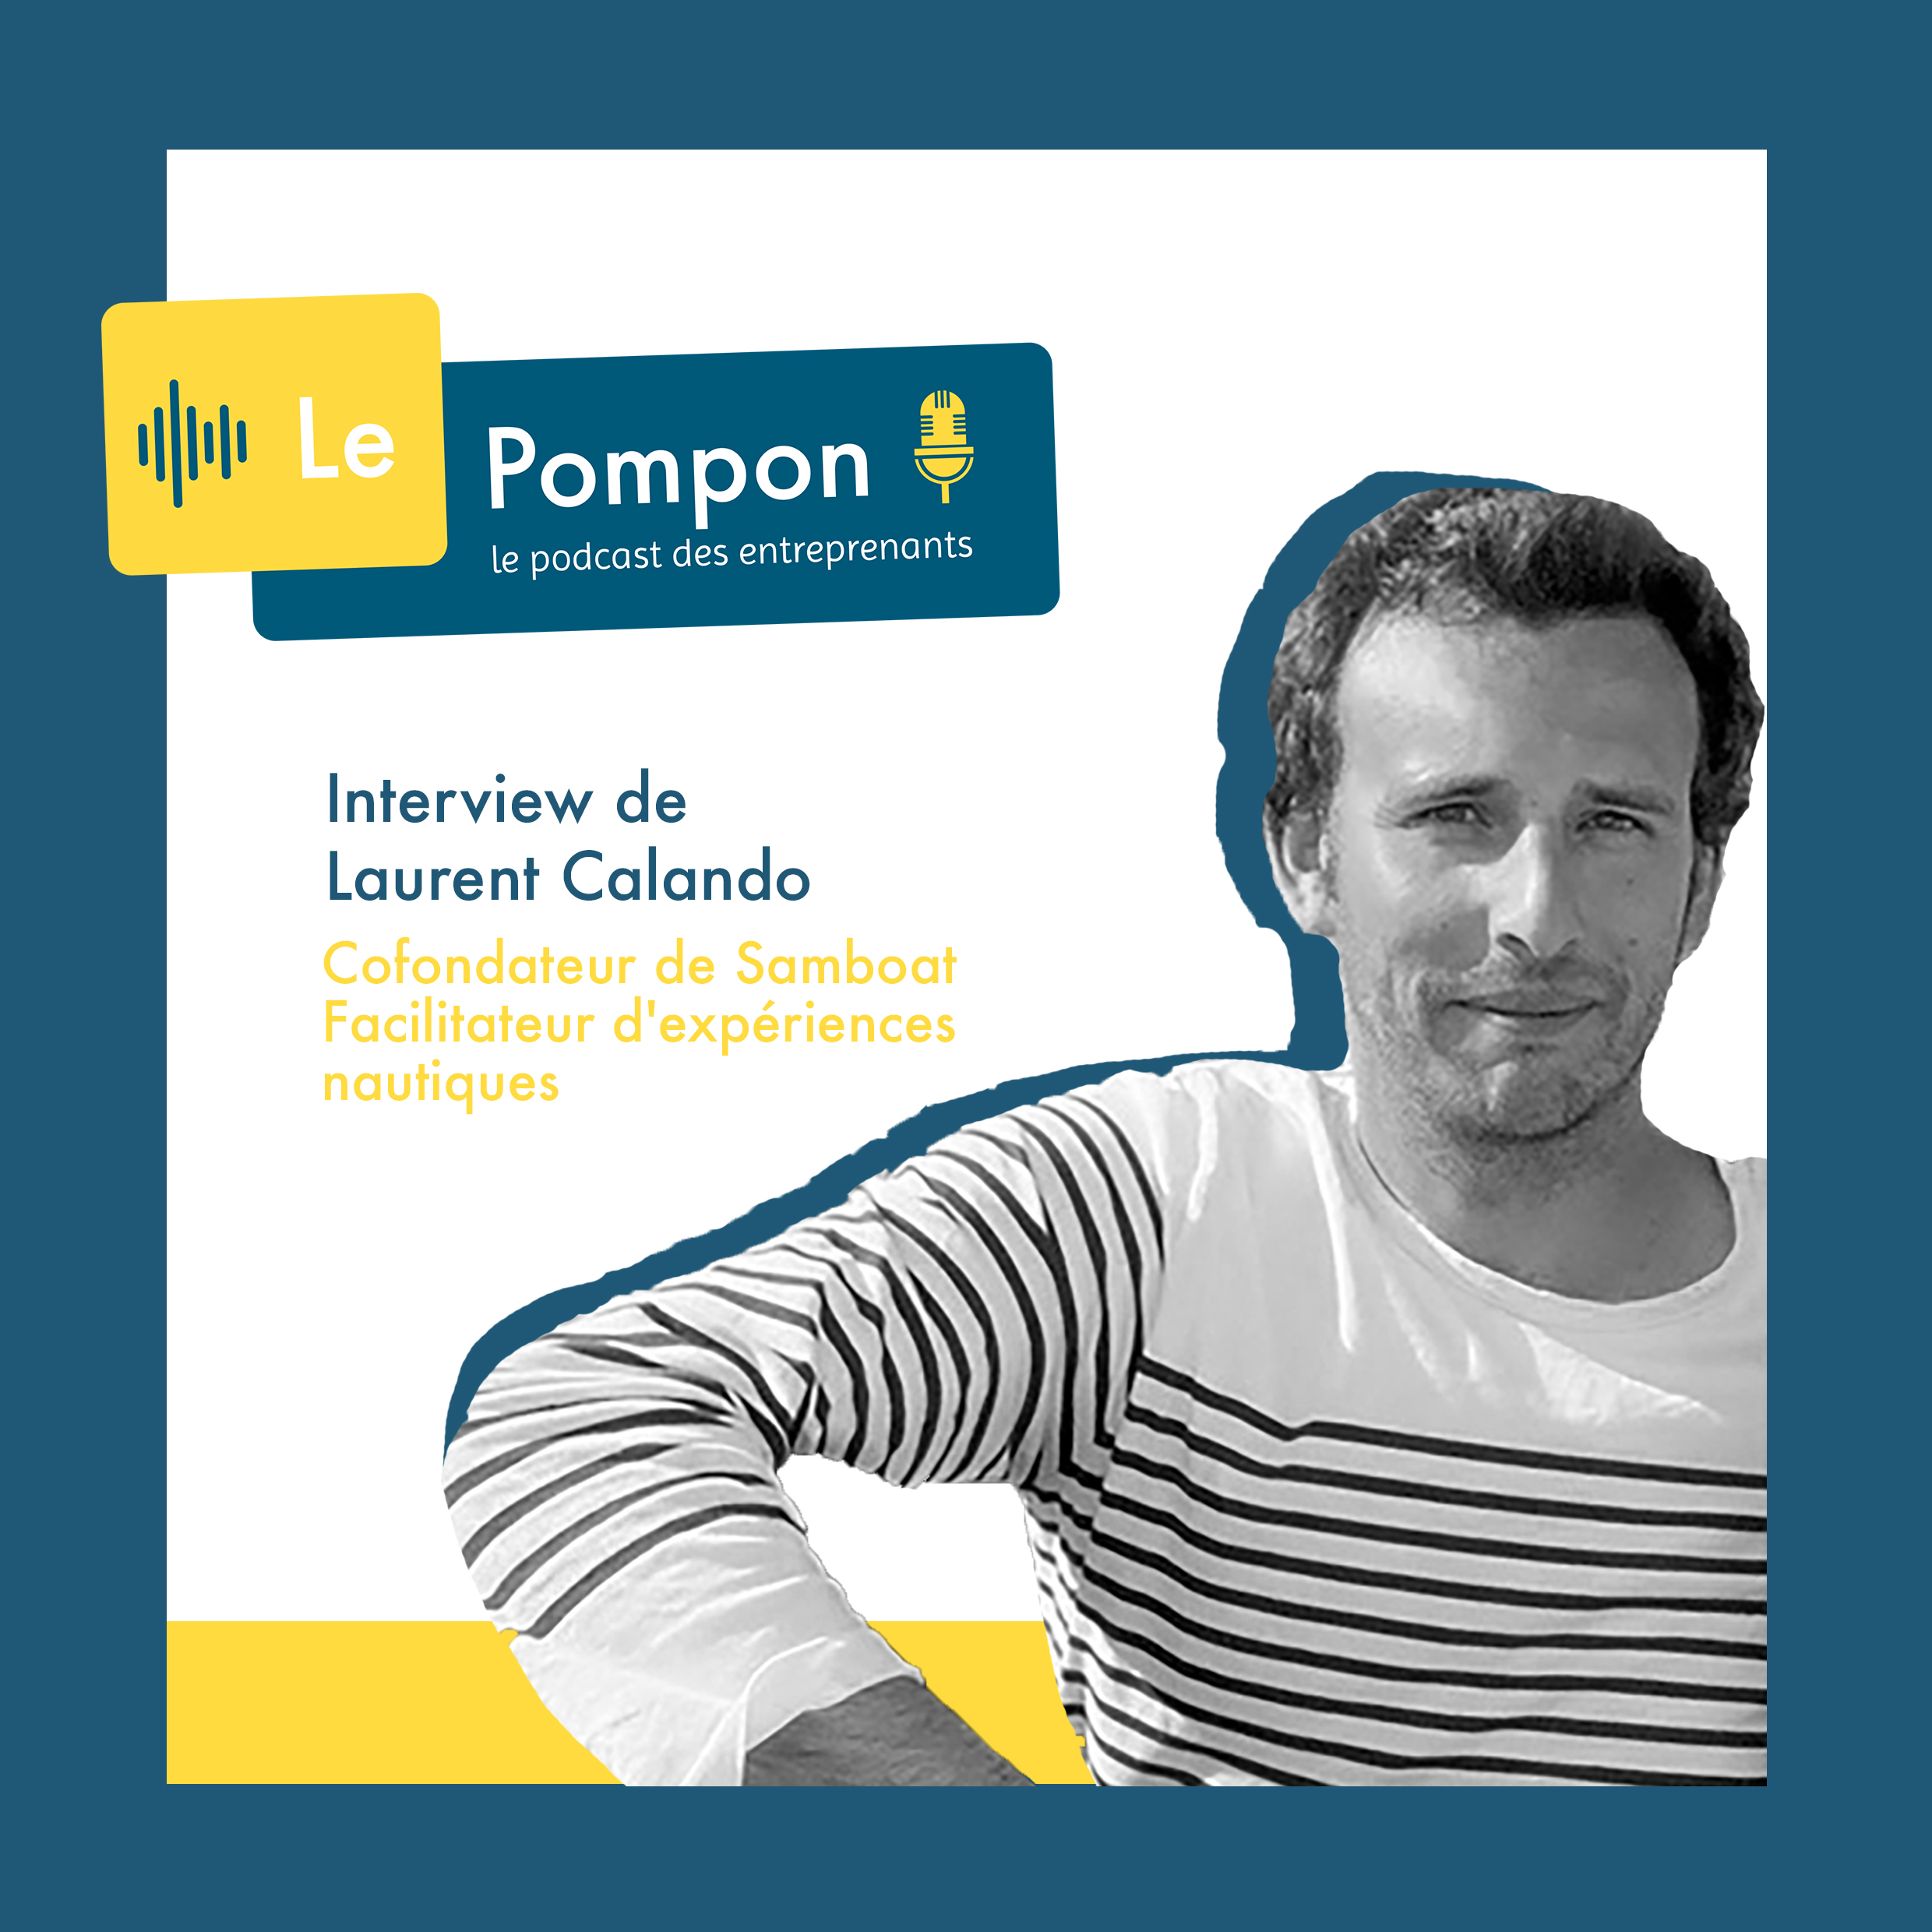 Illustration de l'épisode 19 du Podcast Le Pompon : Laurent Calando, CoFondateur de Samboat